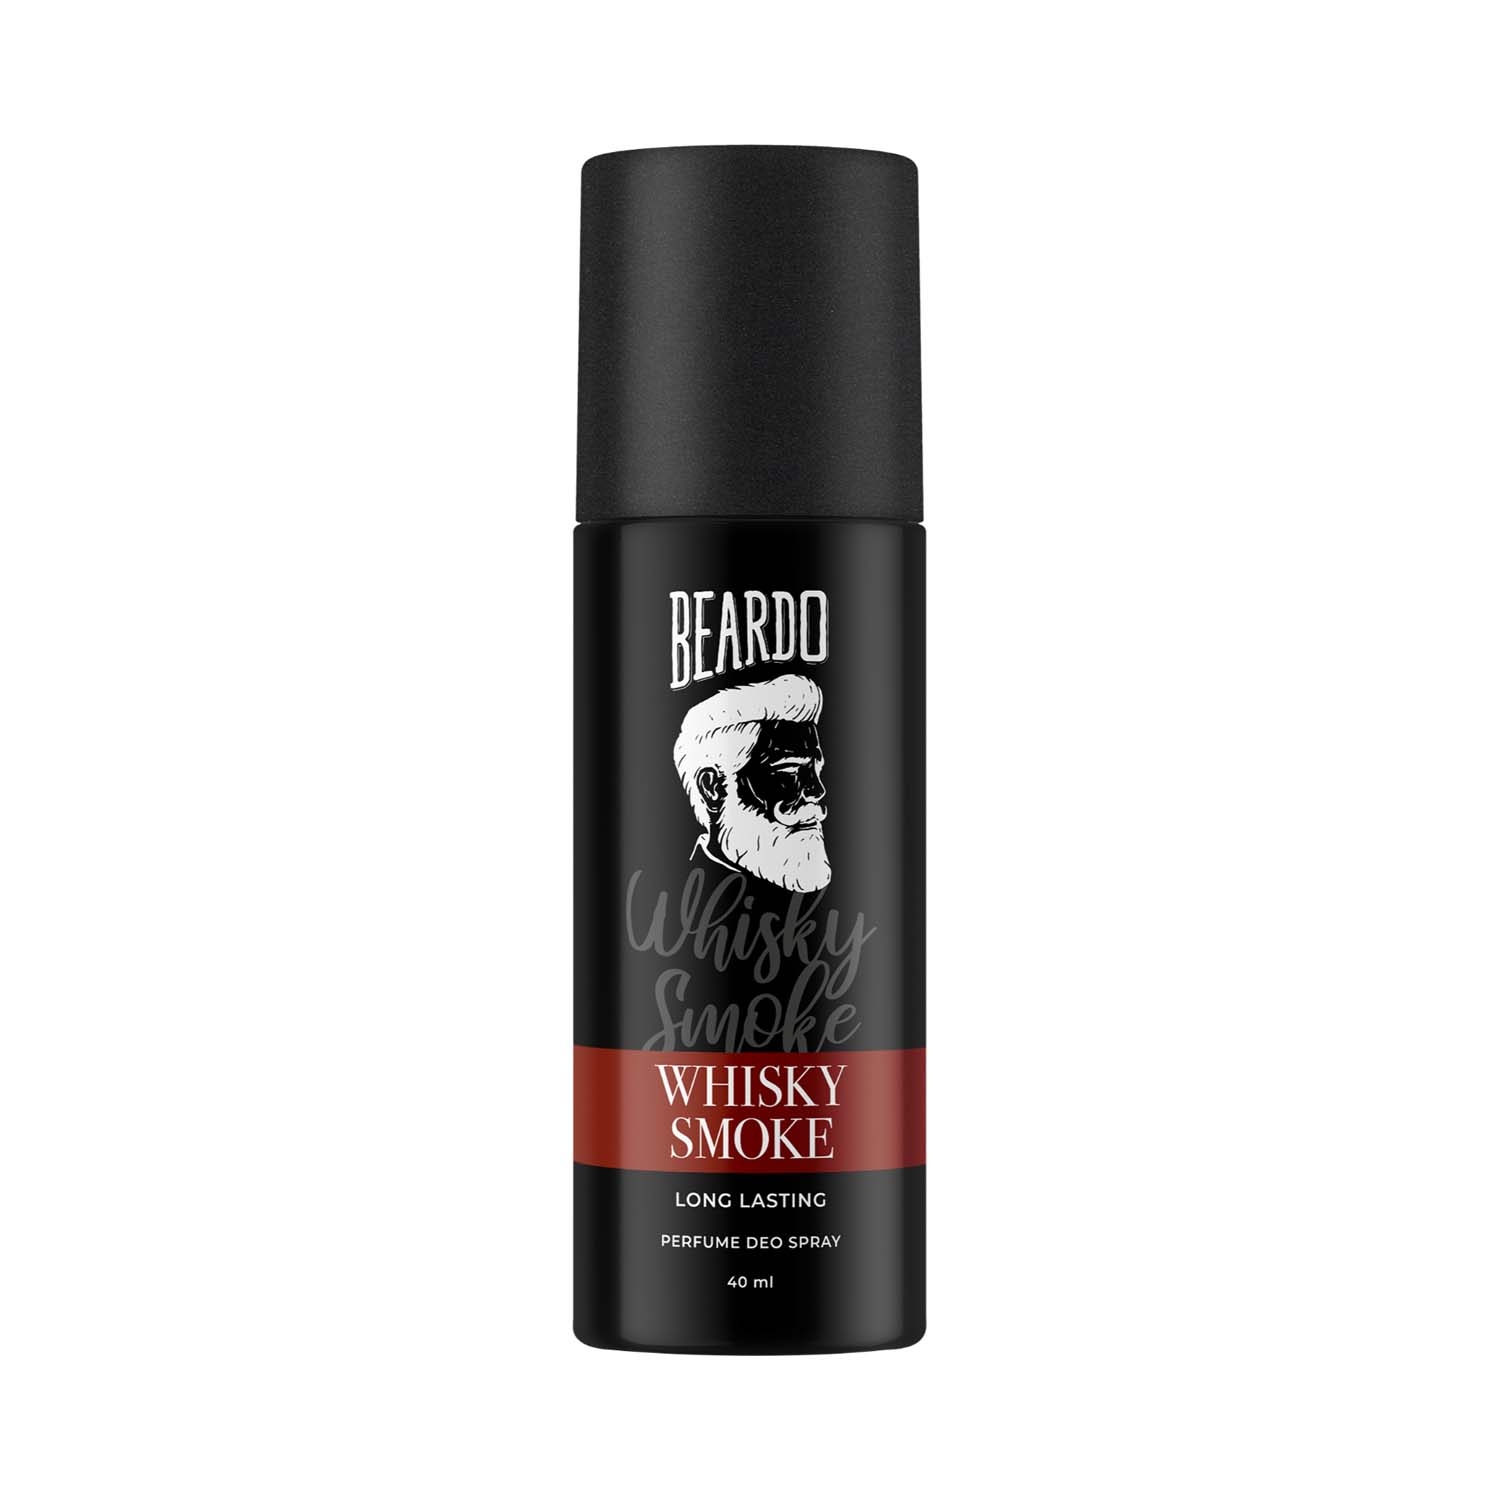 Beardo Whisky Smoke Perfume Deodorant Body Spray (40ml)